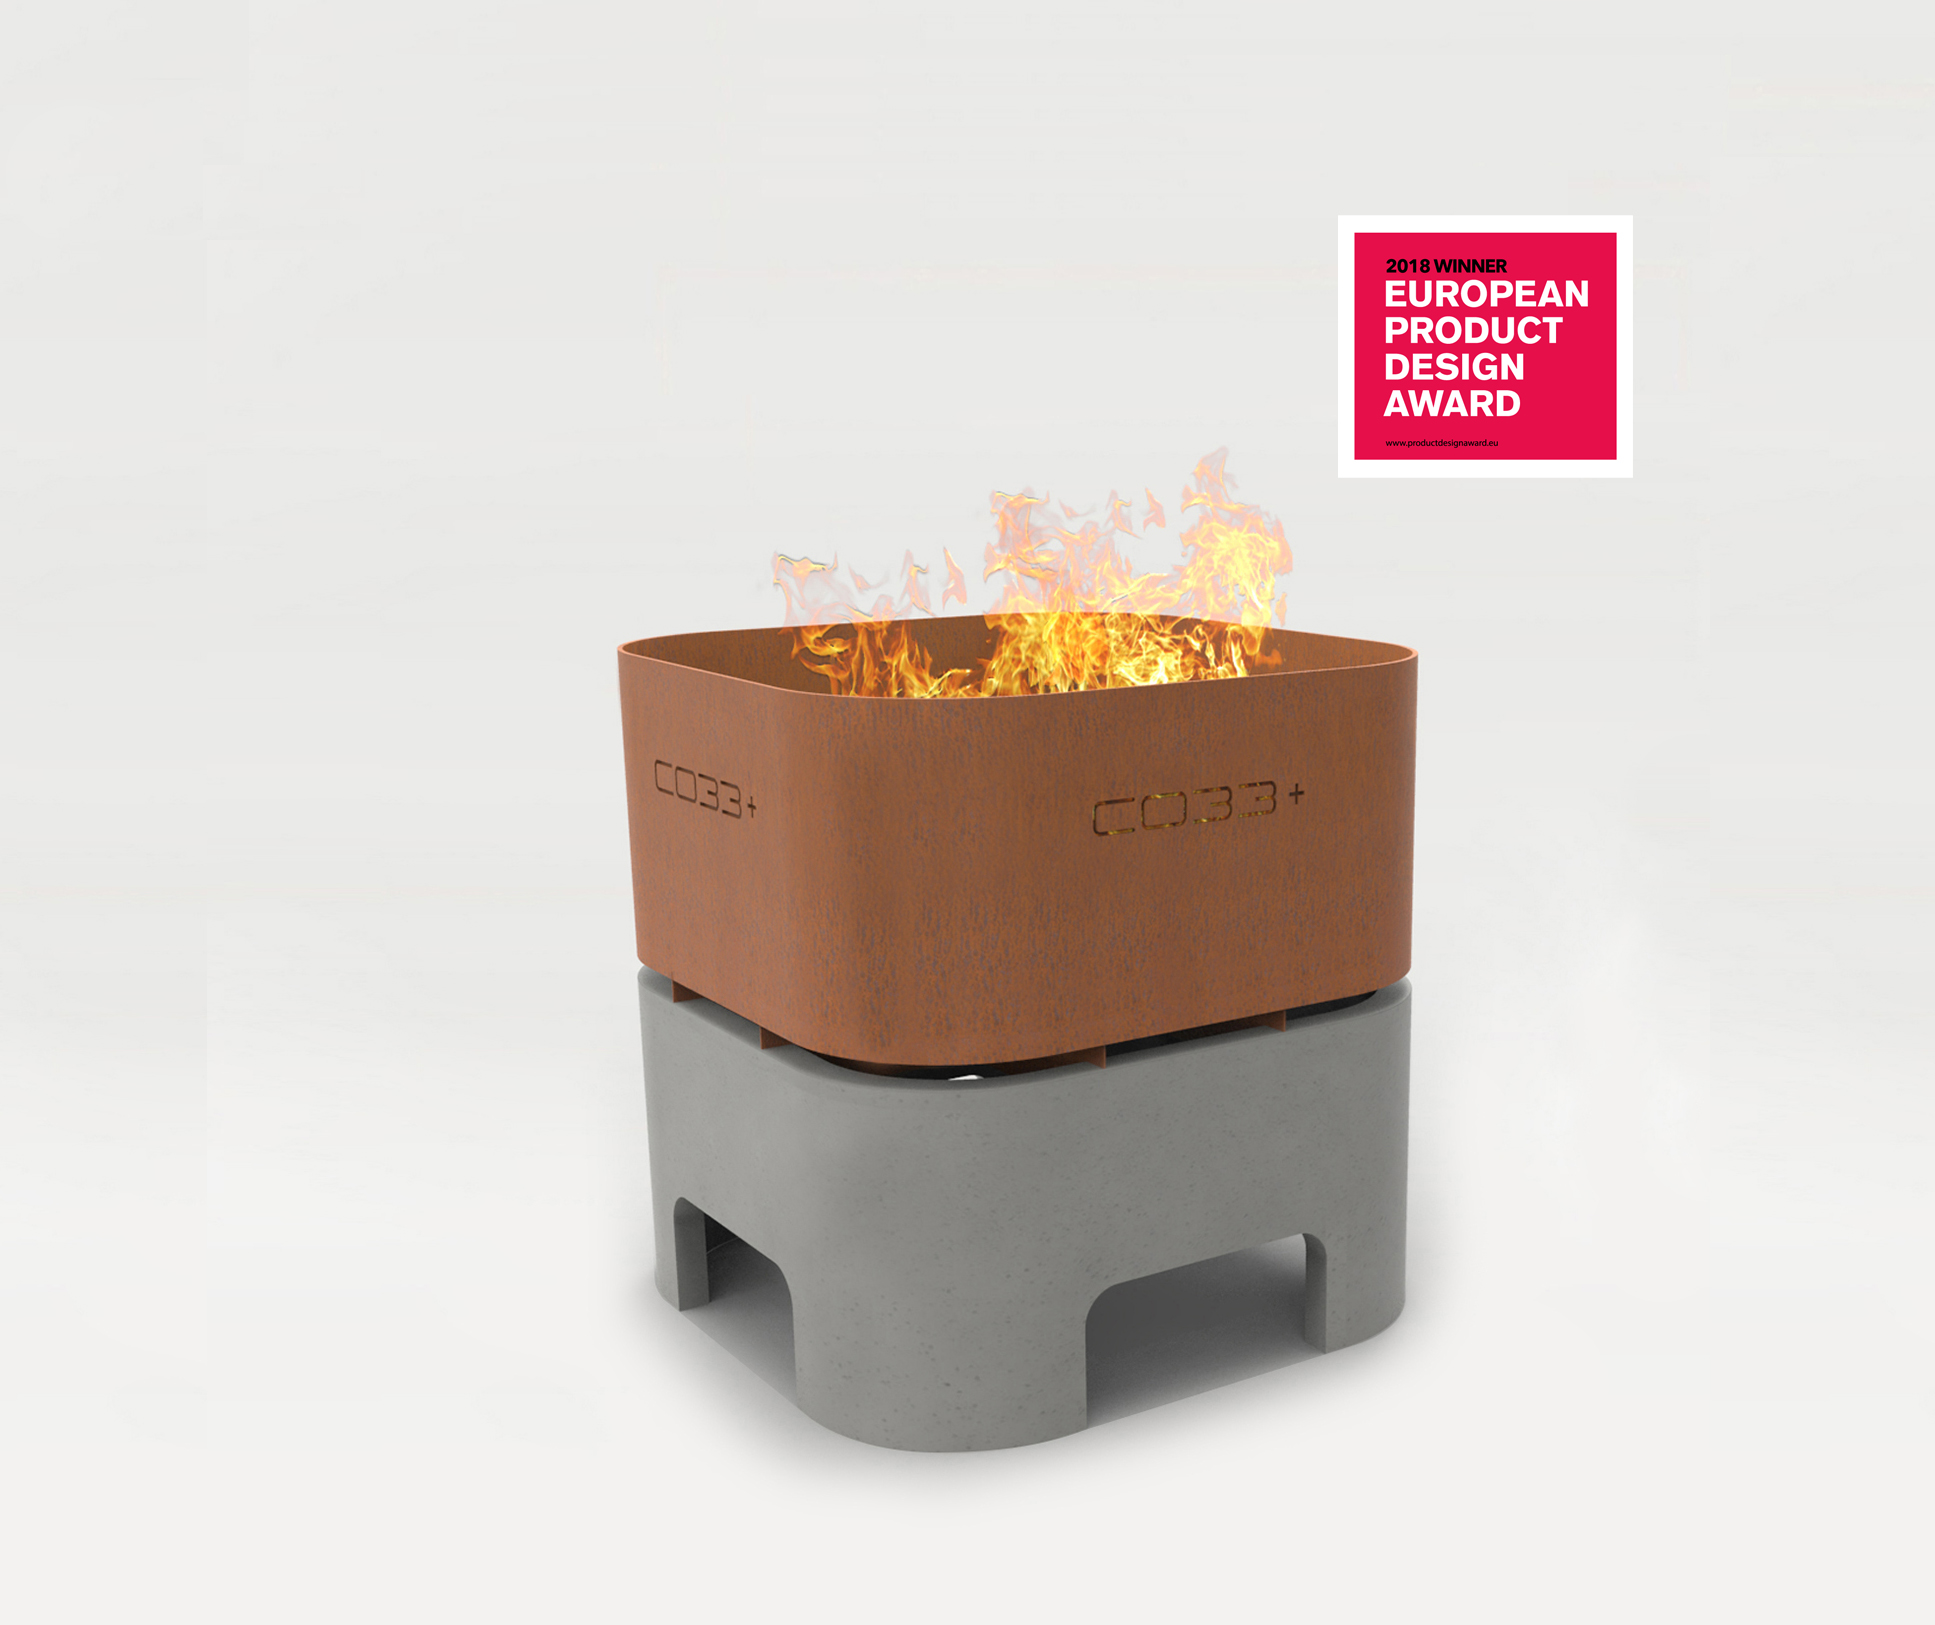 CO33 Betonmöbel Feuerkorb aus Beton und Cortenstahl, Design Award in Gold